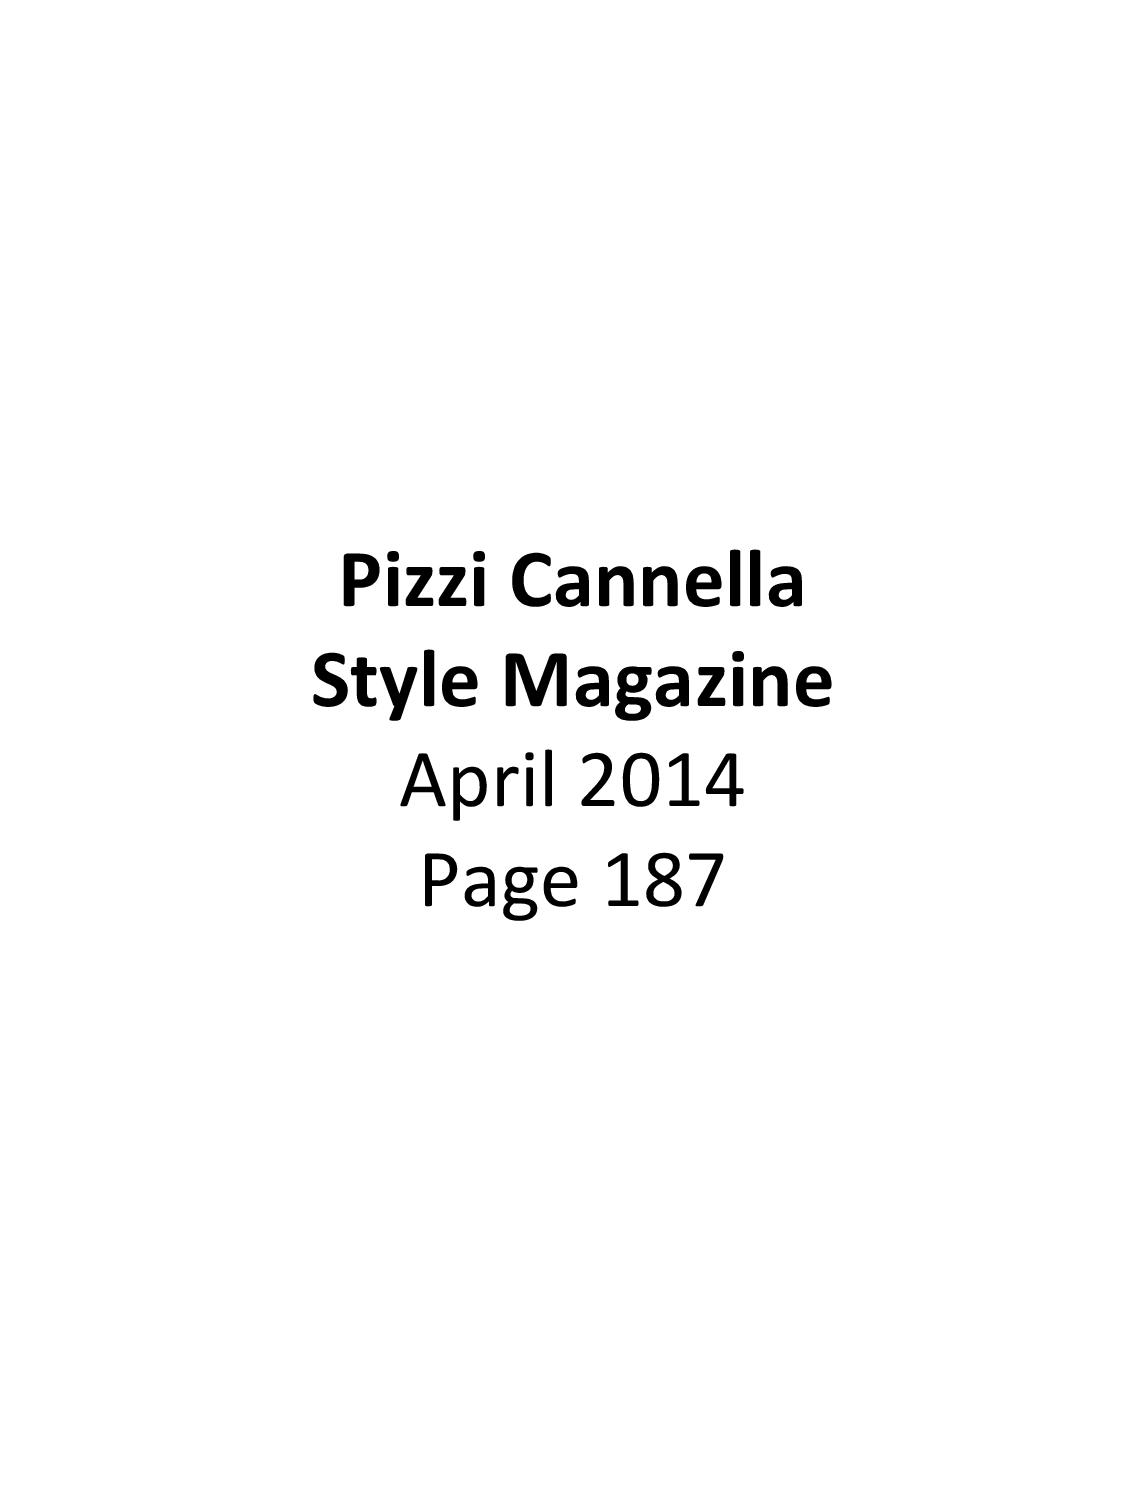 Press - Piero Pizzi Cannella | Media Coverage